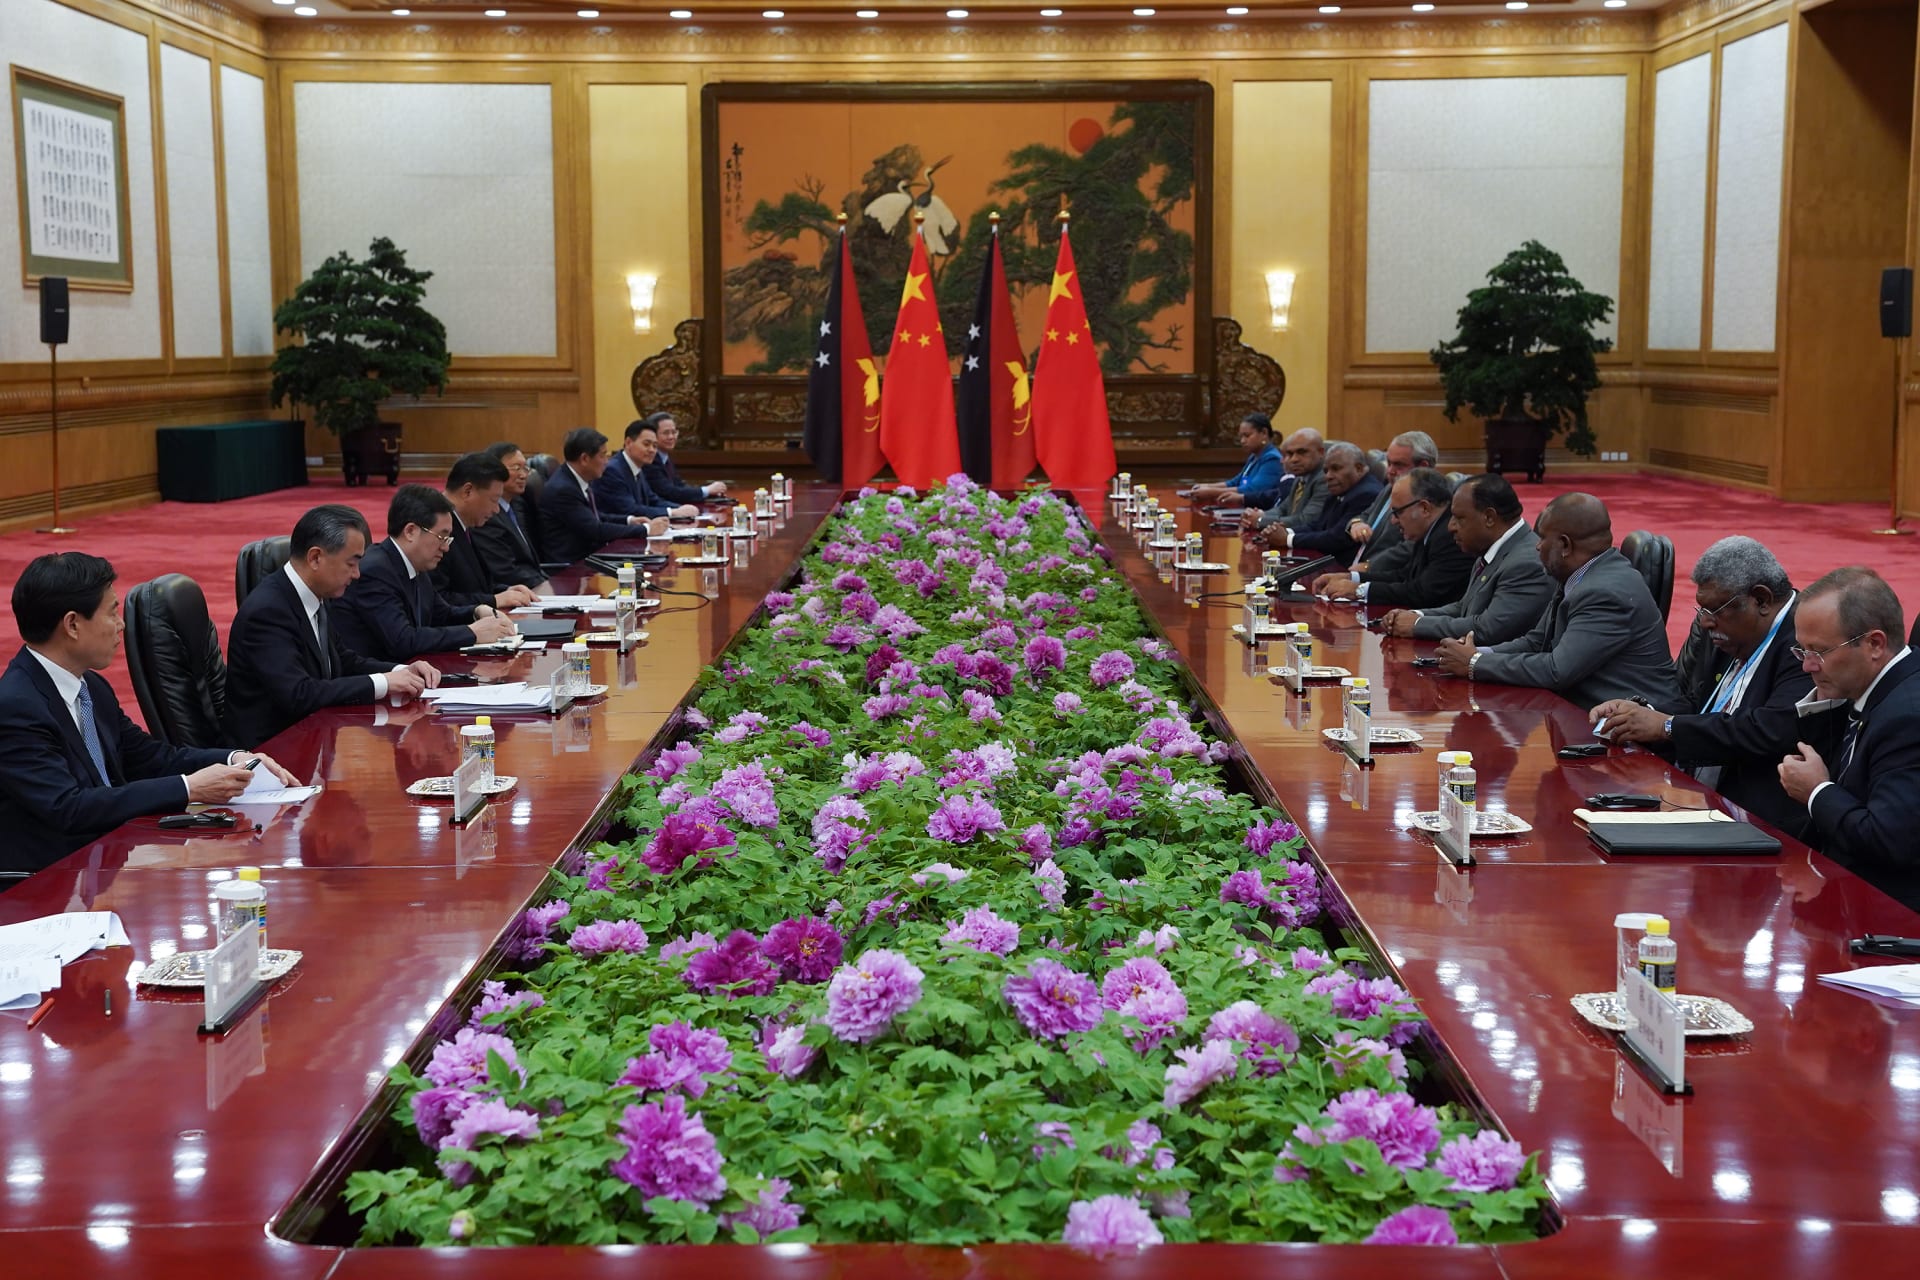 الرئيس الصيني: اتفاقات بـ64 مليار دولار في منتدى الحزام والطريق